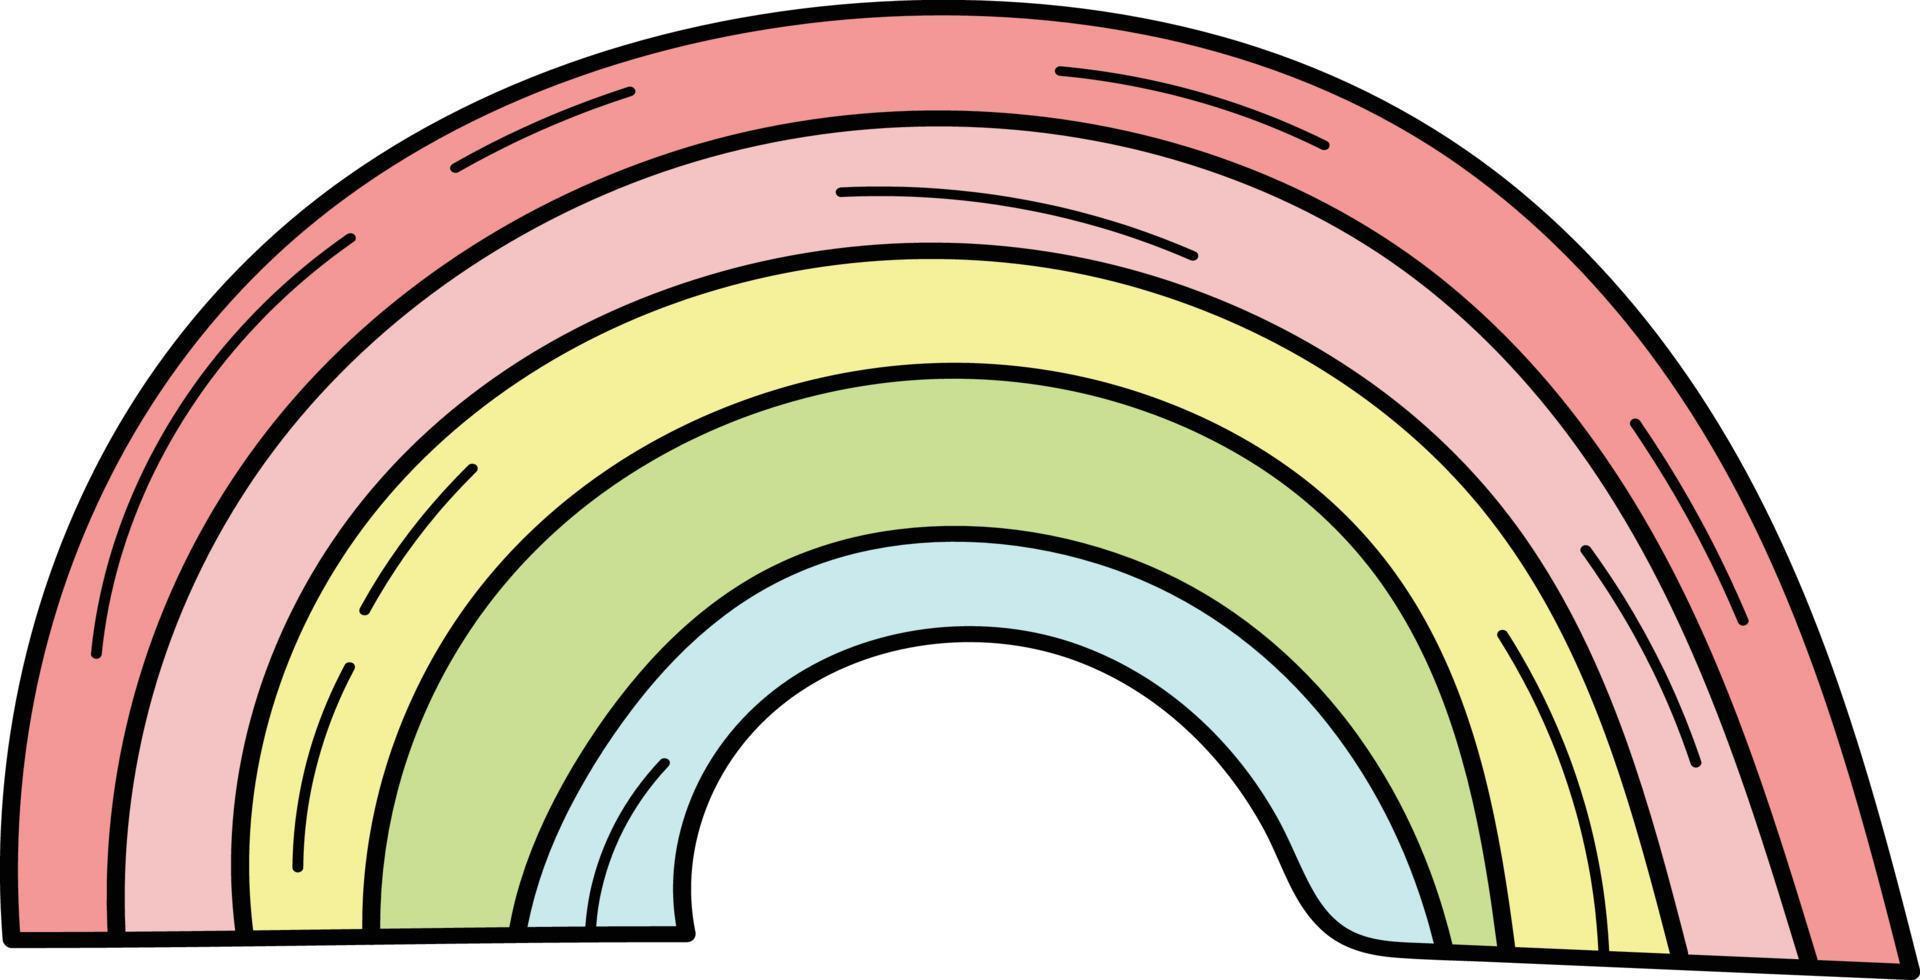 semplice icona di doodle arcobaleno. semplice icona arcobaleno disegnata a mano vettore